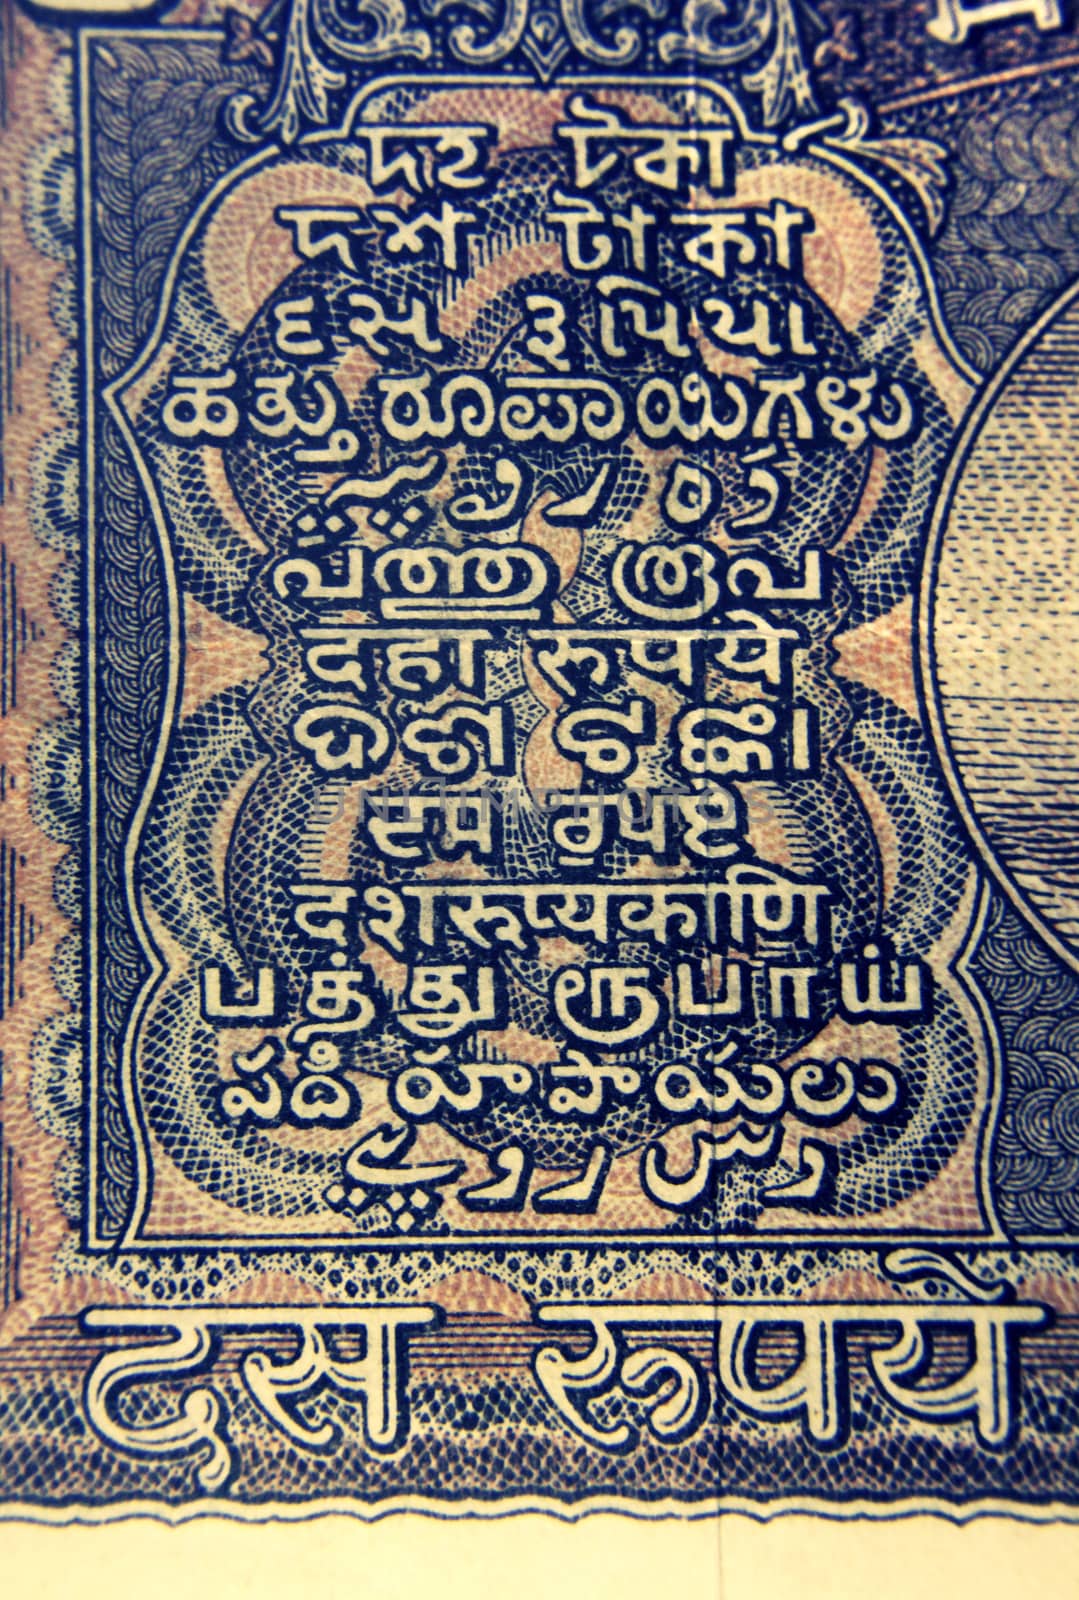 Ten rupee banknote Back Side by yands